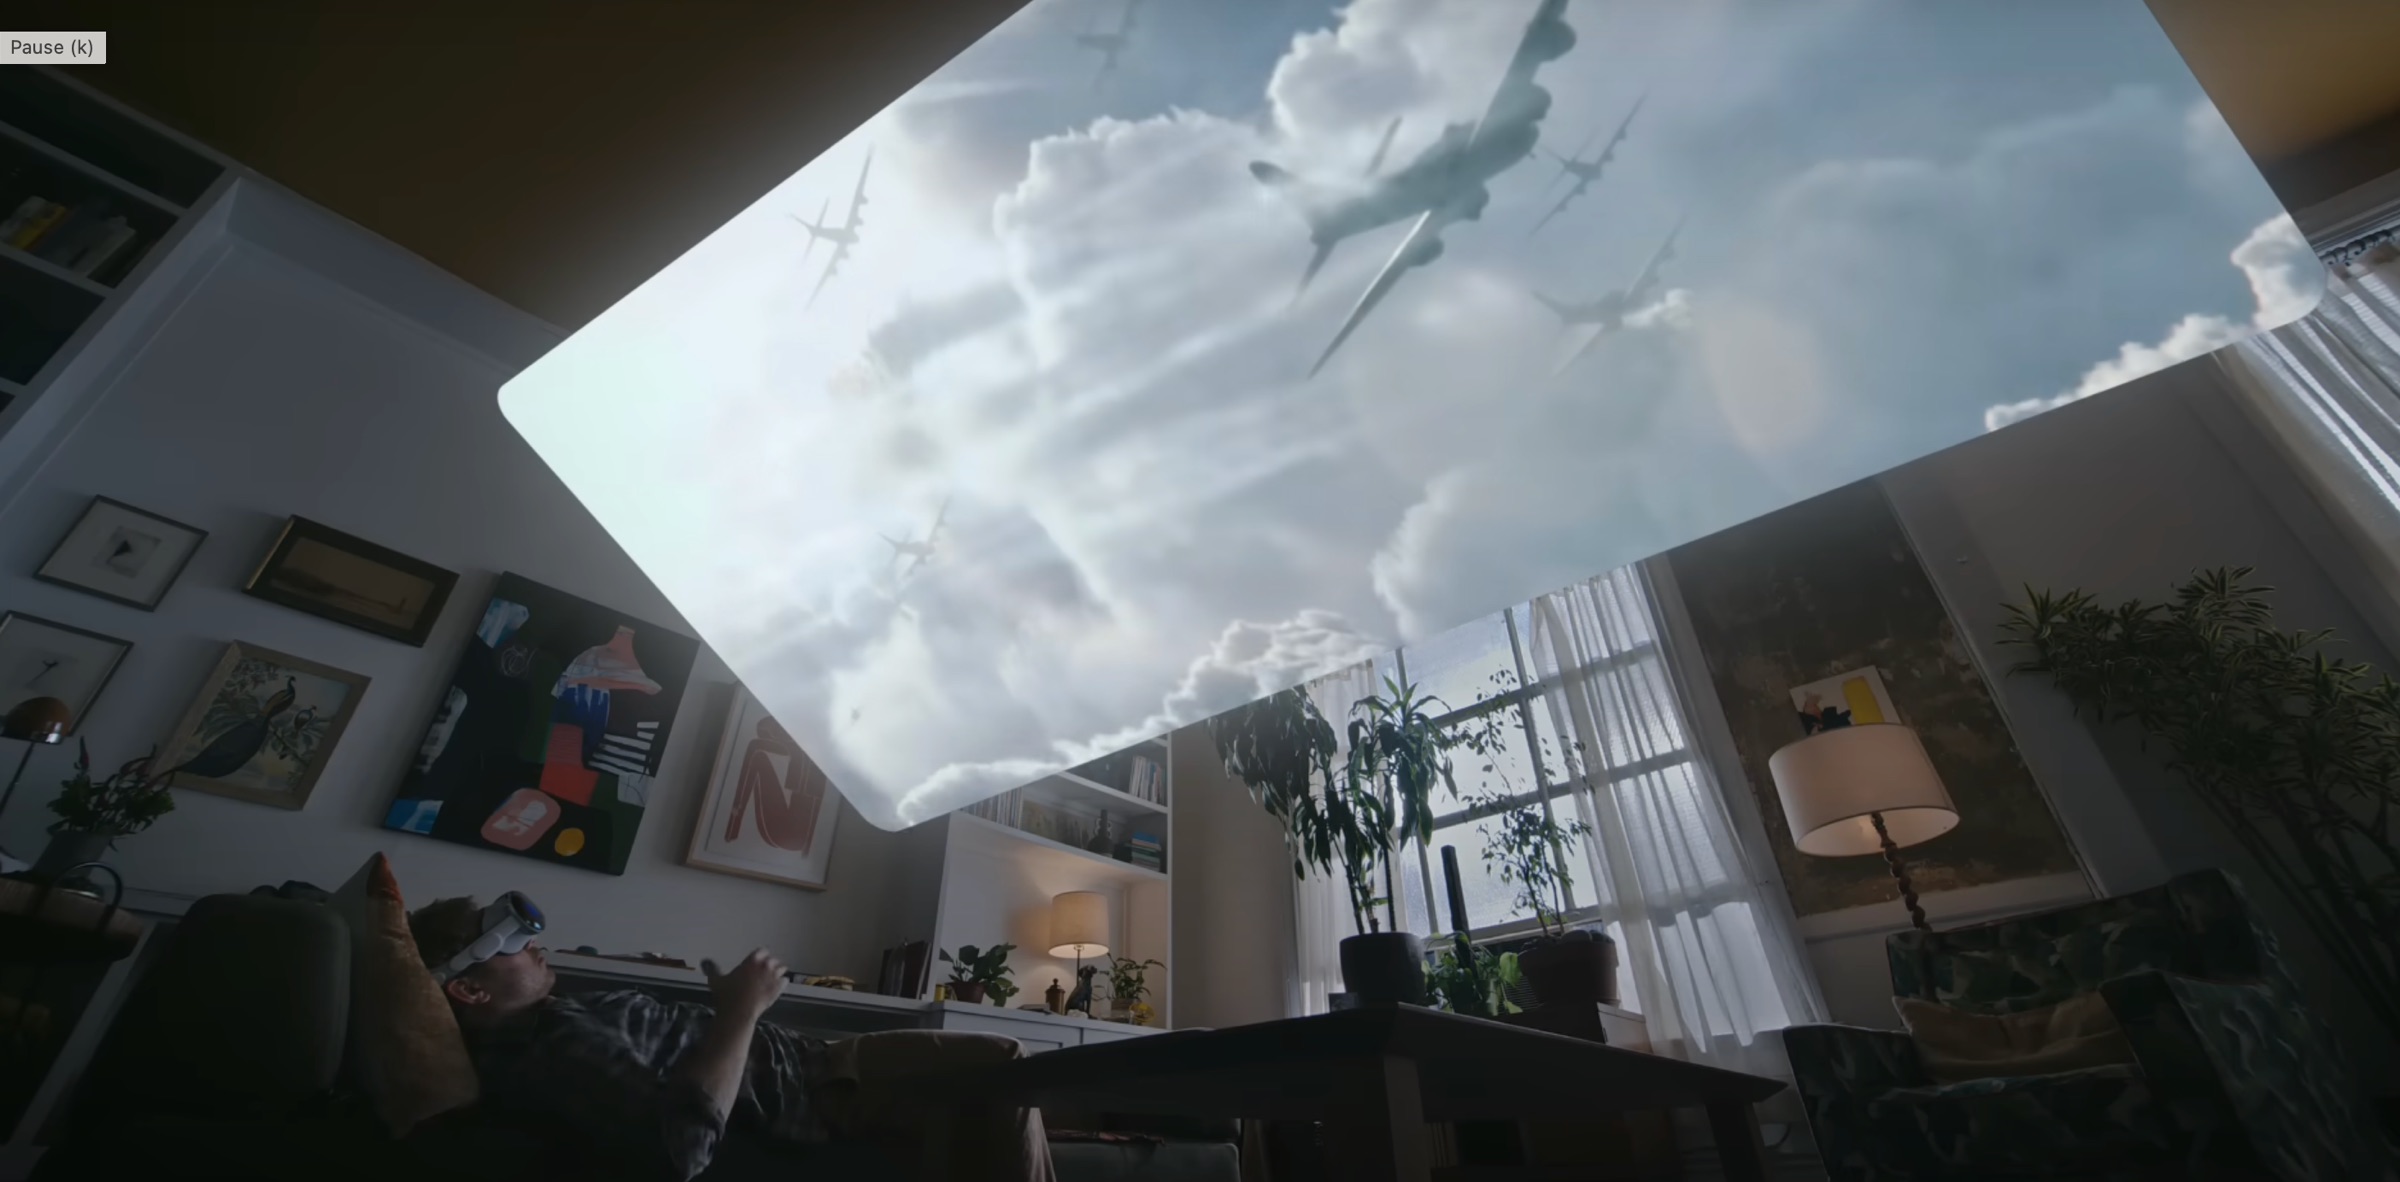 Viendo una película de Apple TV+ en las Vision Pro, poniendo una pantalla gigante en el techo como si uno estuviera en un cine, aunque en realidad, está en el sofá de su casa